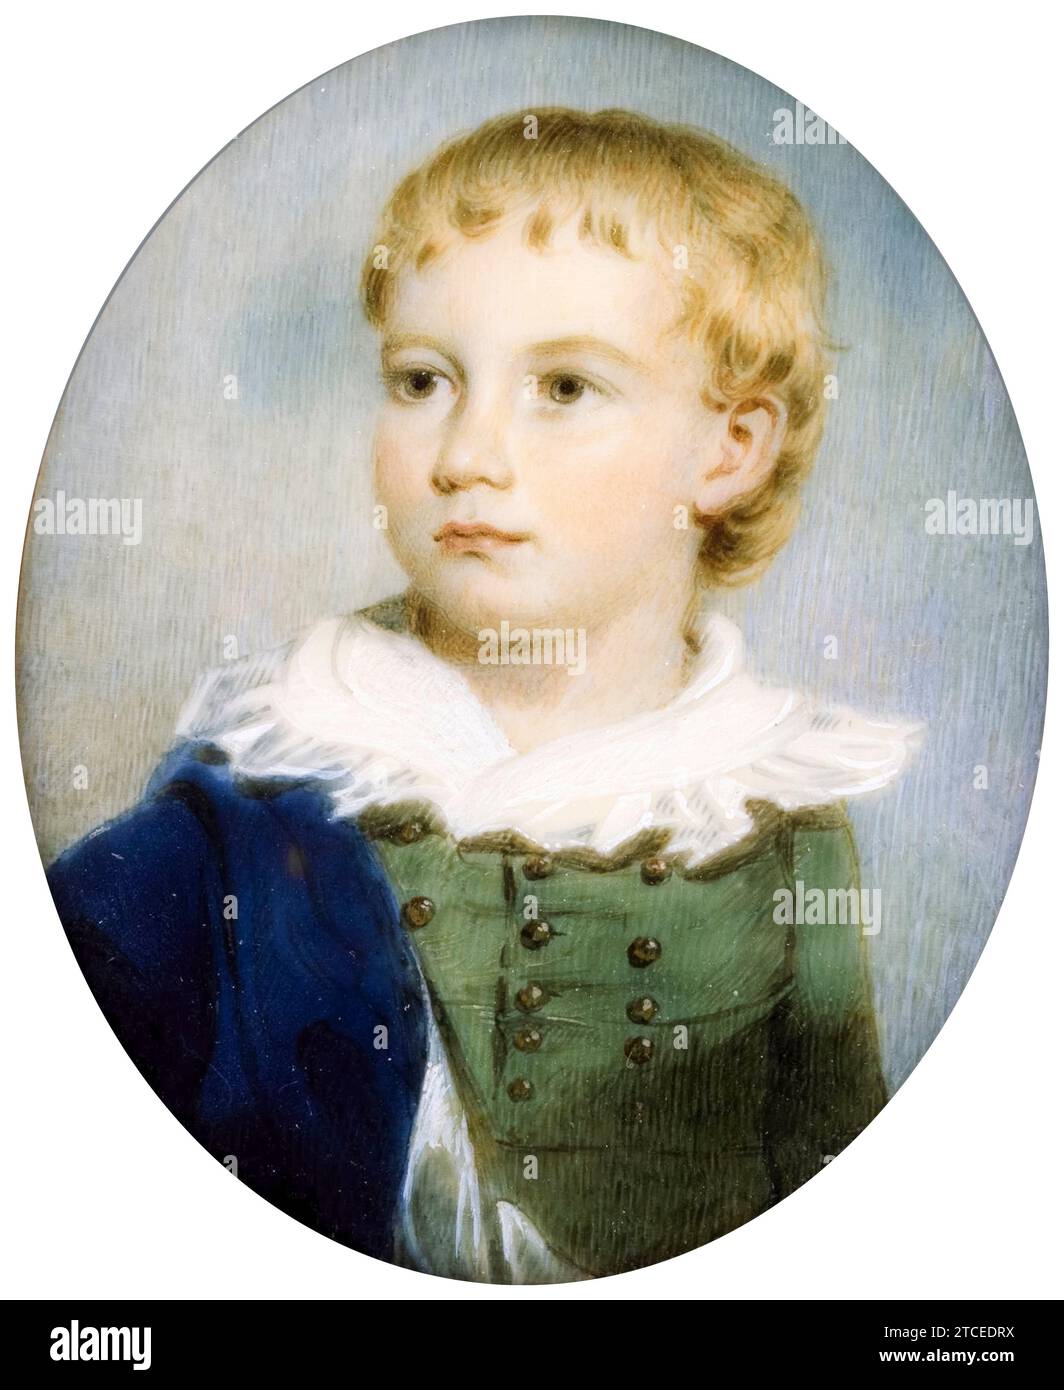 James Nixon, Portrait of a Boy, portrait miniature watercolour painting on ivory, 1805-1825 Stock Photo